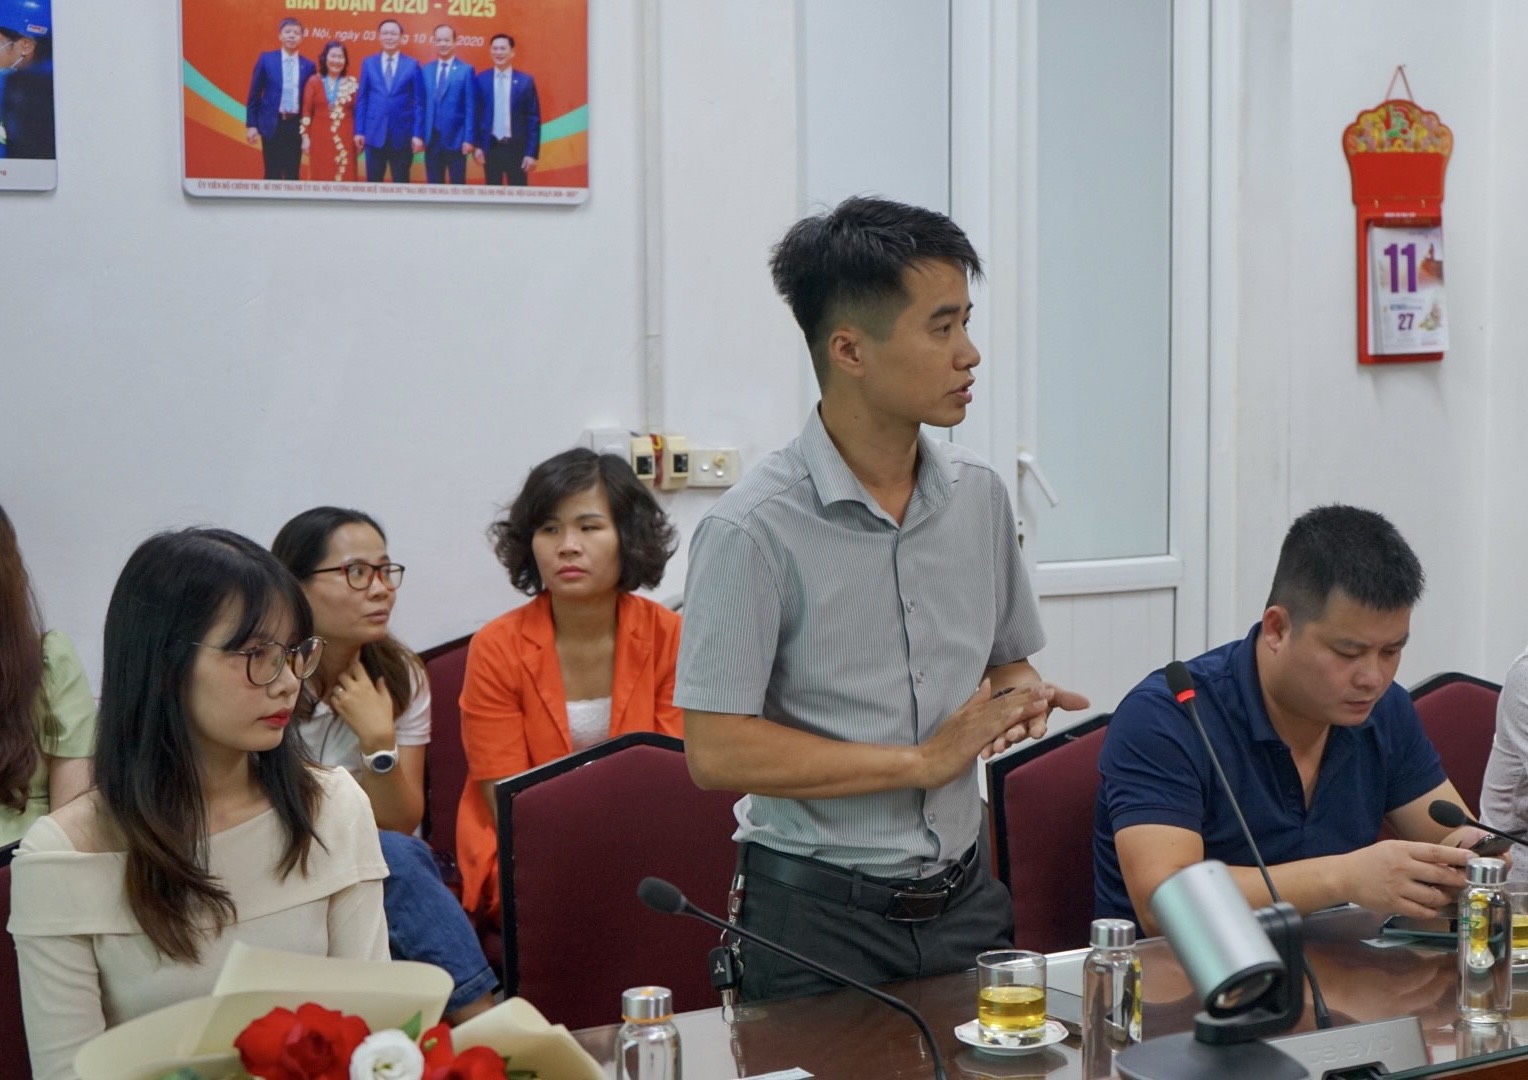 Tạp chí Công nghiệp môi trường kết nối doanh nghiệp, tặng quà cho người lao động tại Urenco Hà Nội